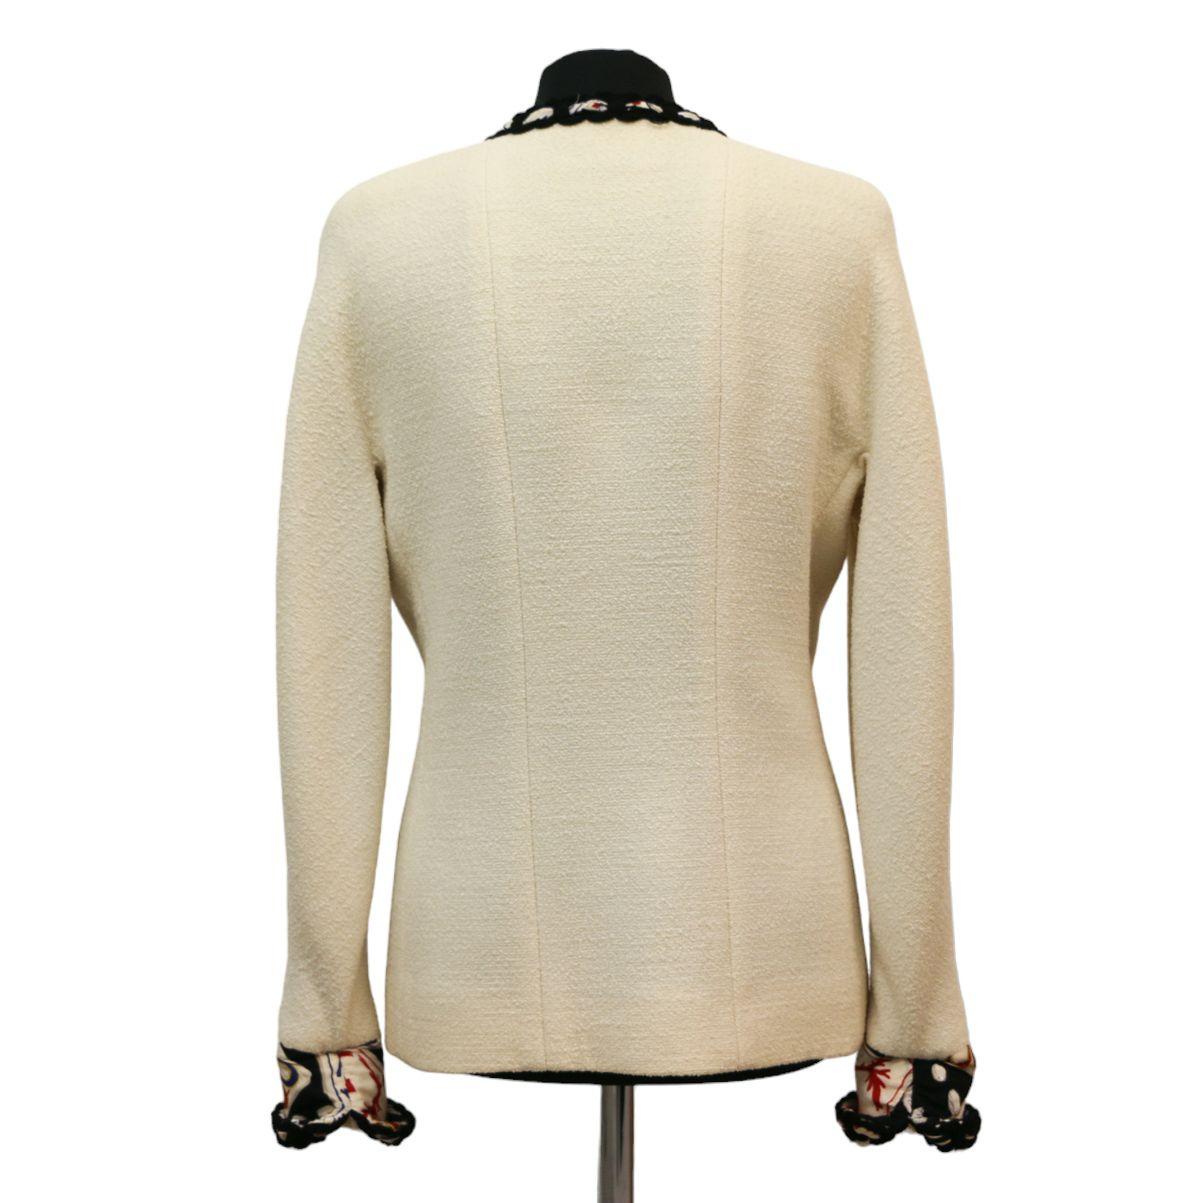 Magnifique veste VINTAGE Chanel de la Collectional de 1989 en taille 40 (fr).
Fabriqué en France, en tweed, avec une doublure en soie ; dans les coloris blanc, noir, bleu et rouge.
Dimensions : Epaules : 40cm, dessous de poitrine : 45cm, Hauteur :